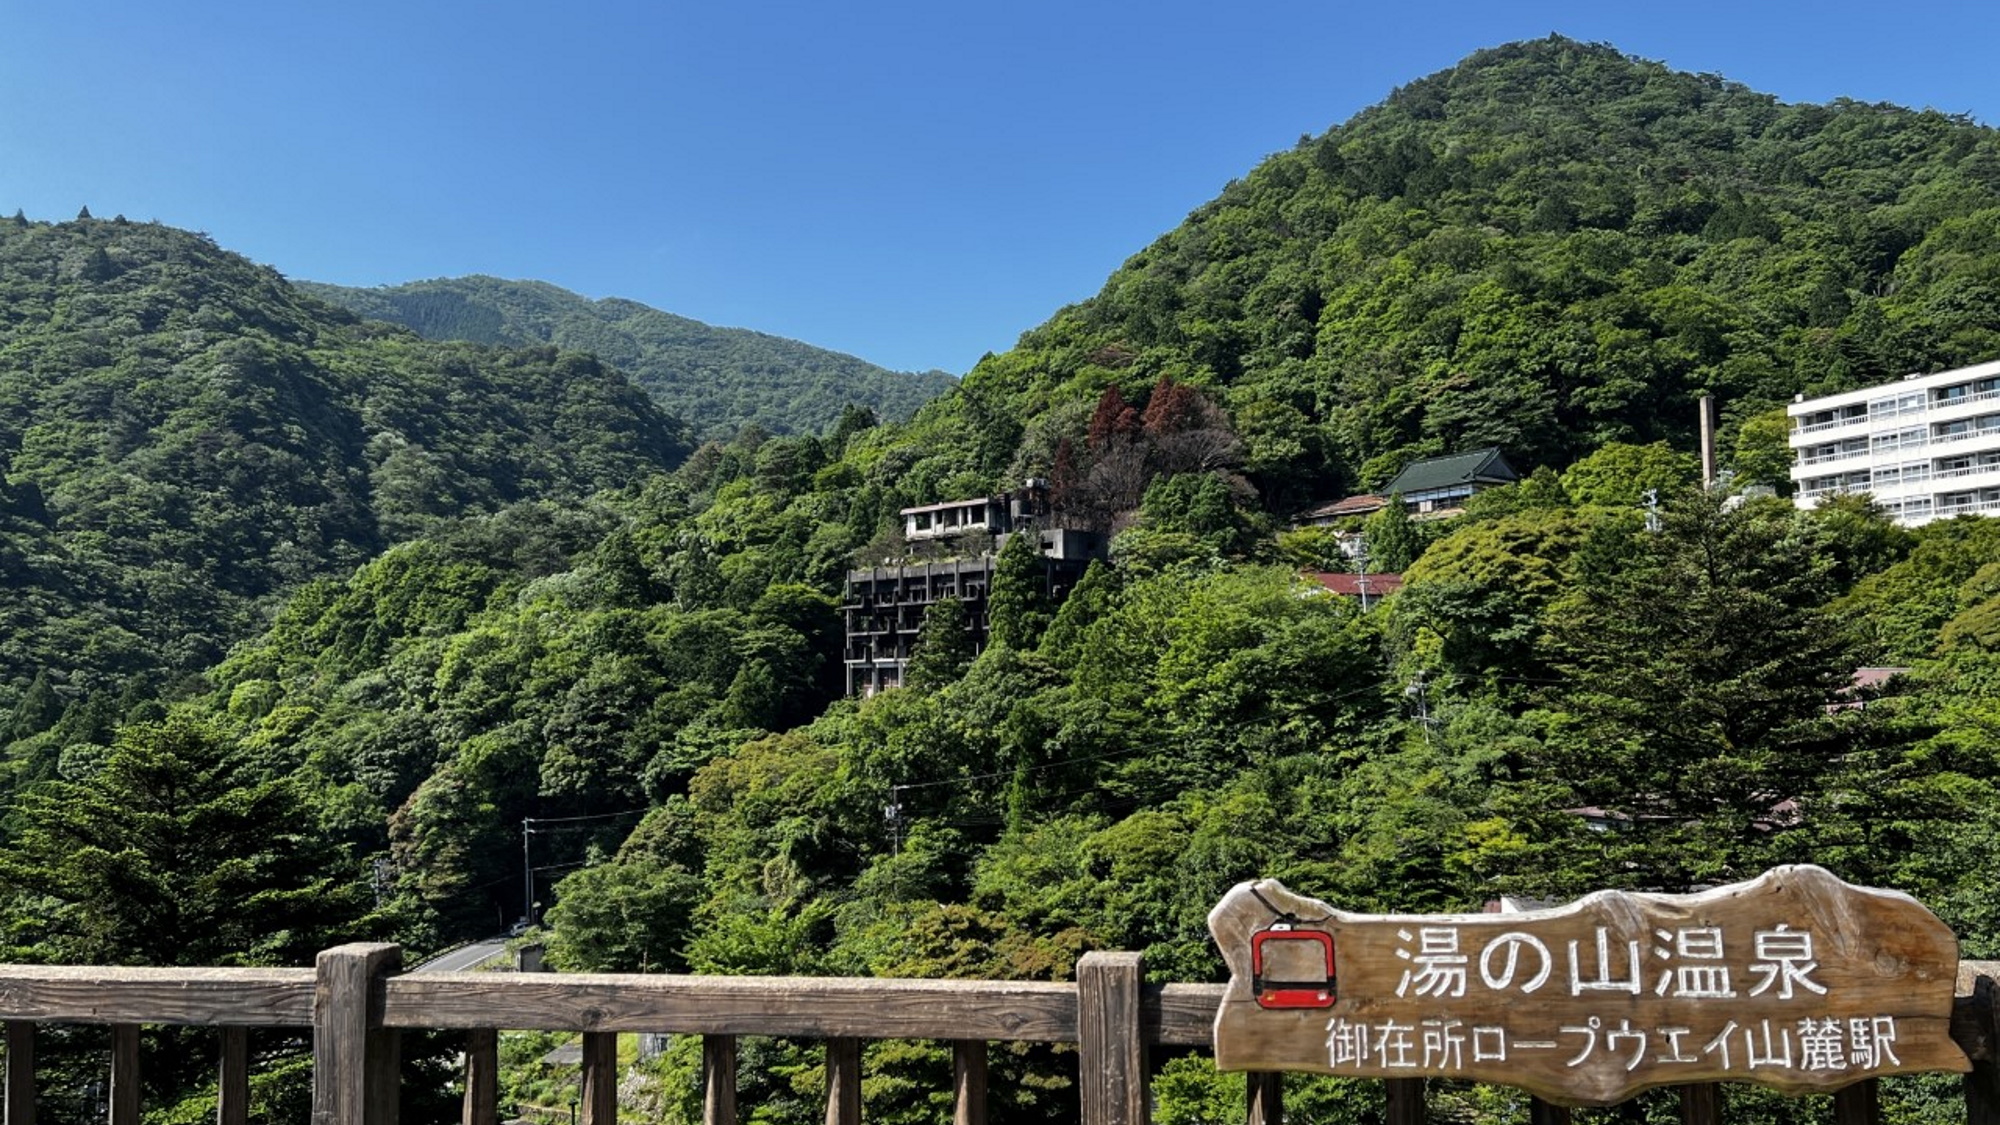 【湯の山温泉】多くの文化人も訪れた「関西の奥座敷」都市近郊ながらも自然豊かな温泉街です。